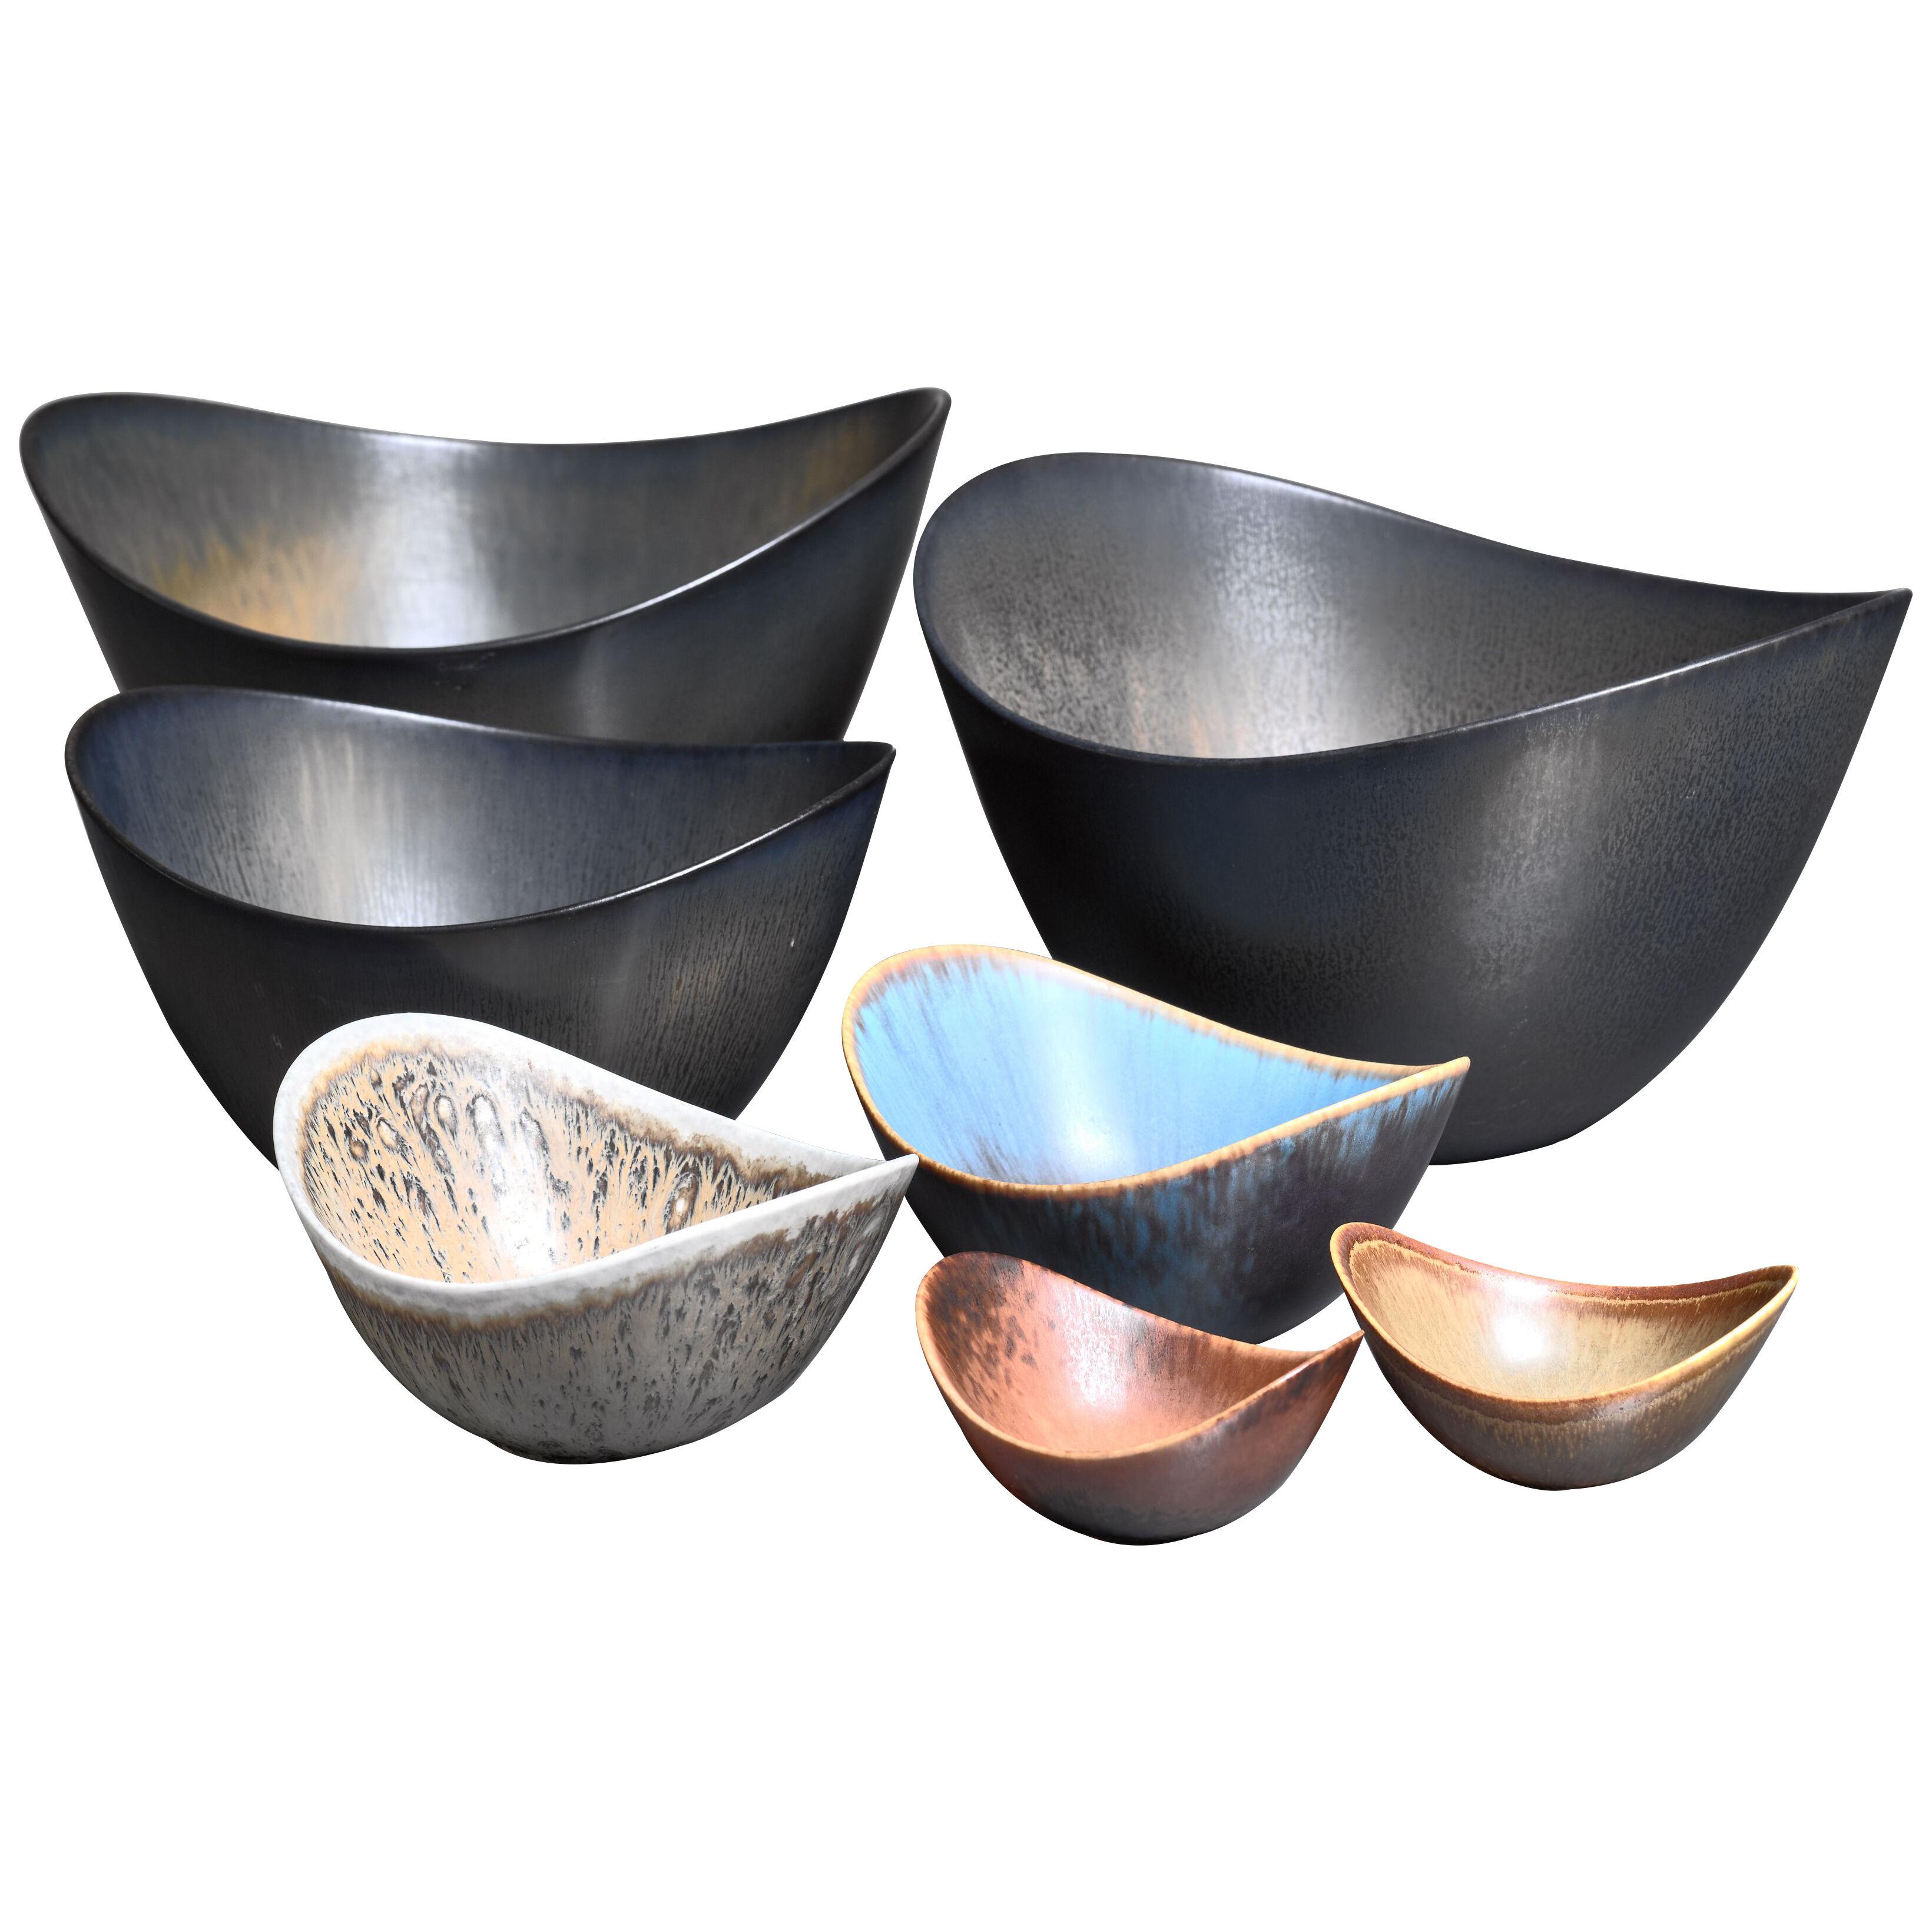  Set of 7 Gunnar Nylund ceramic bowls for Rörstrand, 1950s